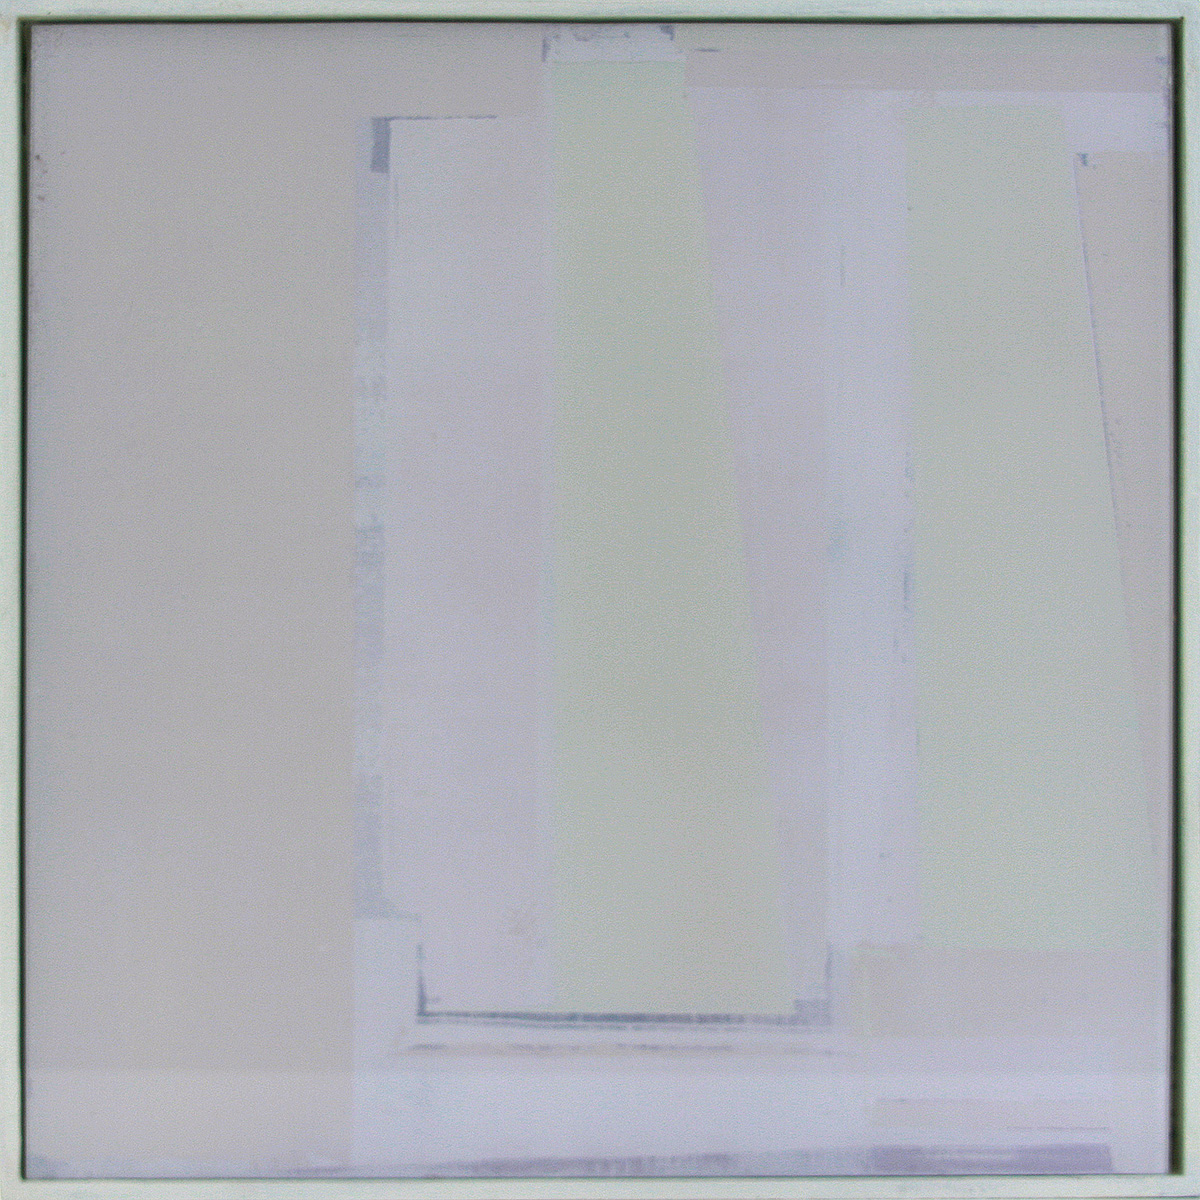 Auf-Glas-Malerei 1 / Schichtungen, 201630 x 30 cmPigment, geschliffen auf Glas, gerahmt